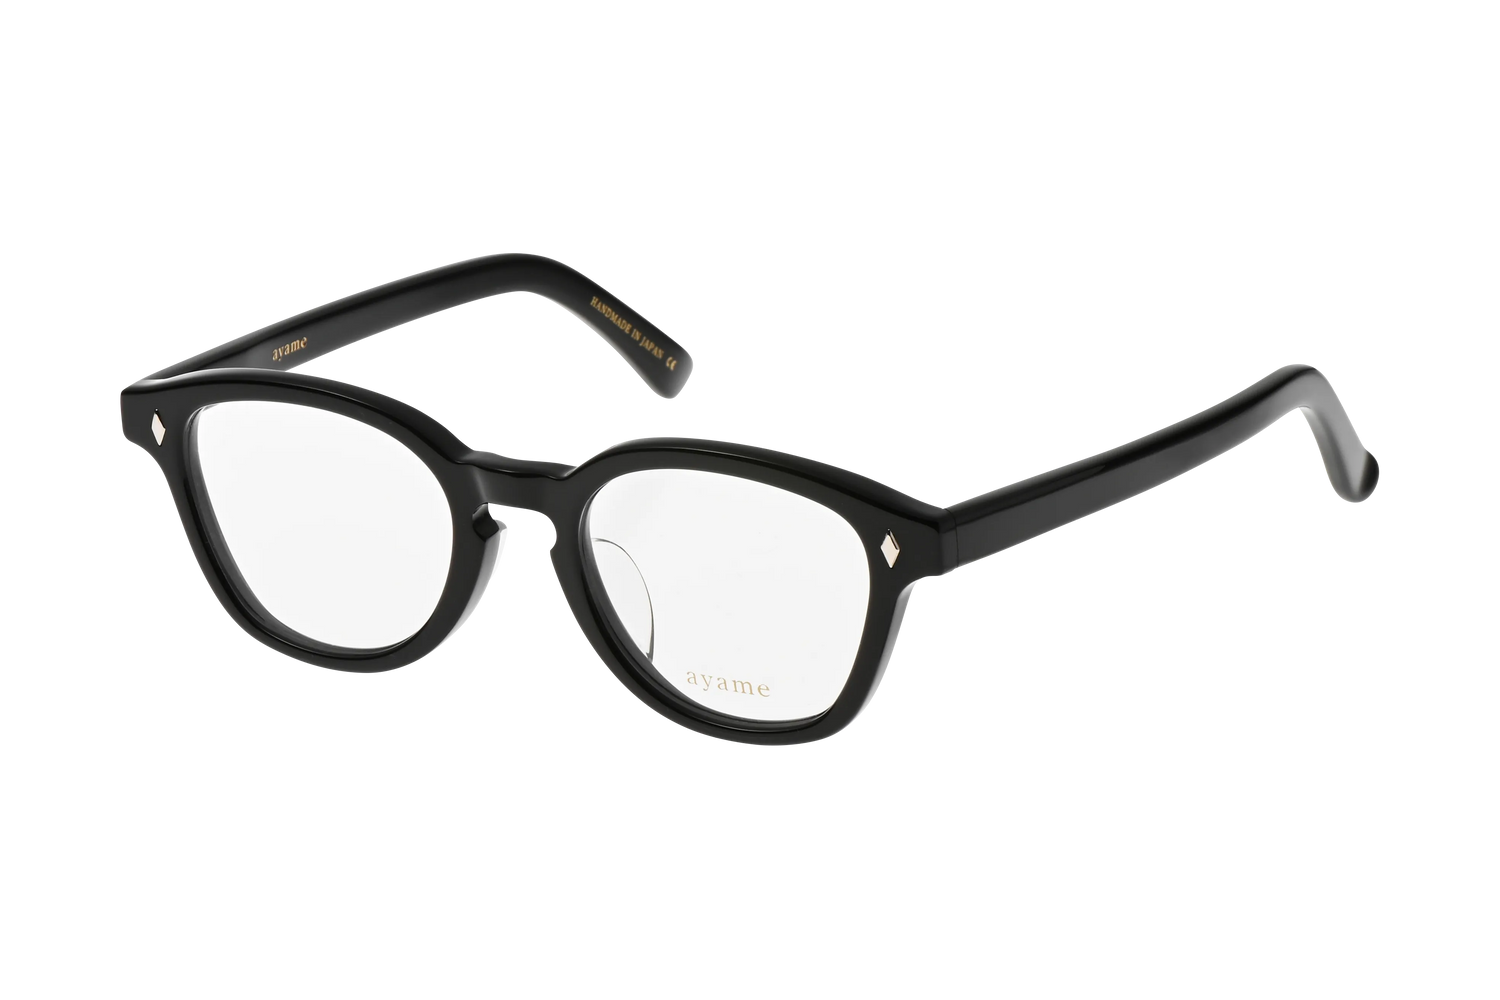 ウェリントン型のメガネのニューオールド46のブラック